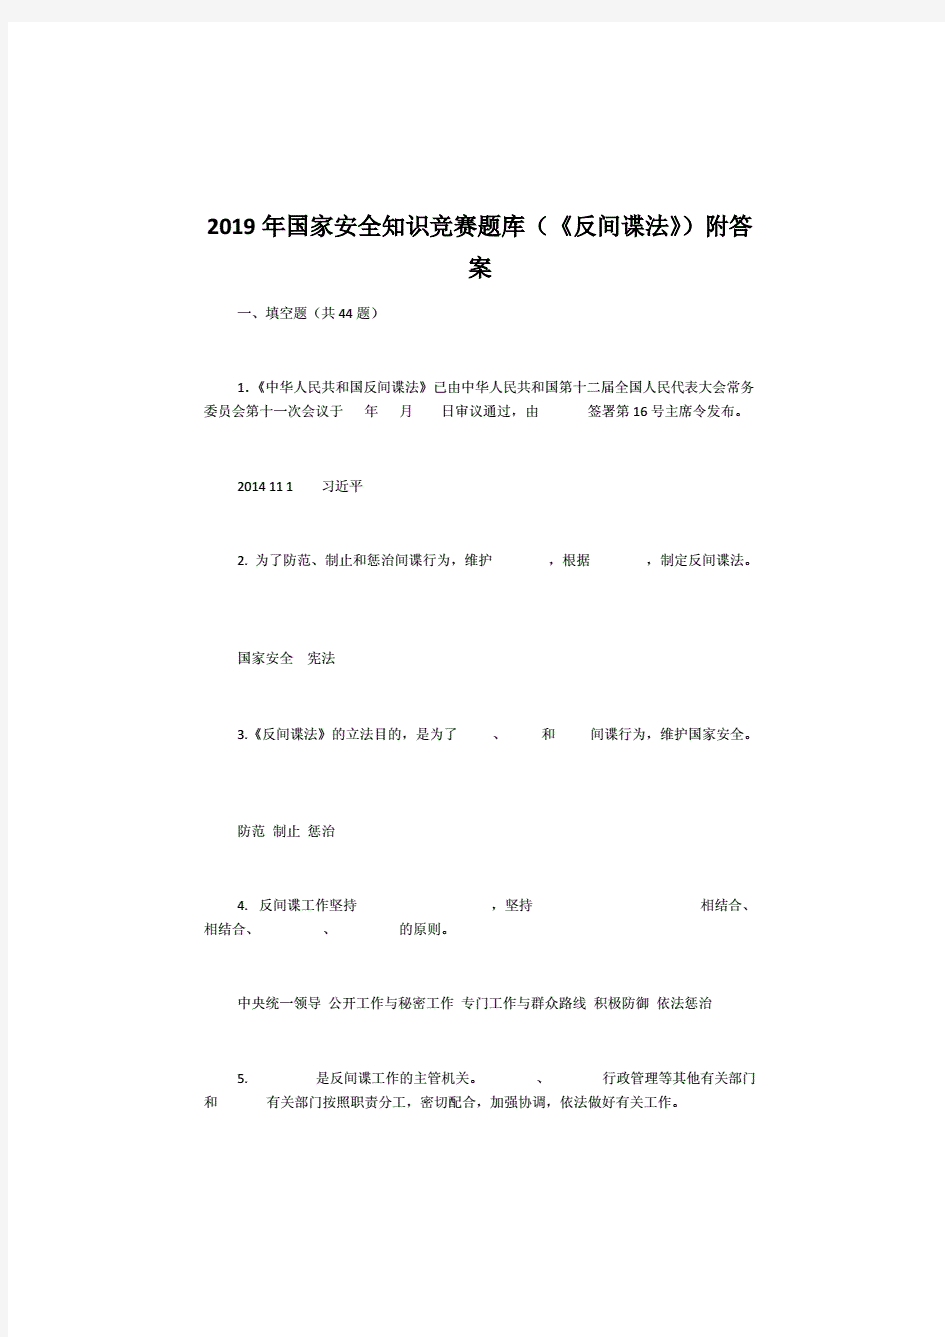 2019年国家安全知识竞赛题库(,《反间谍法》) 附答案.